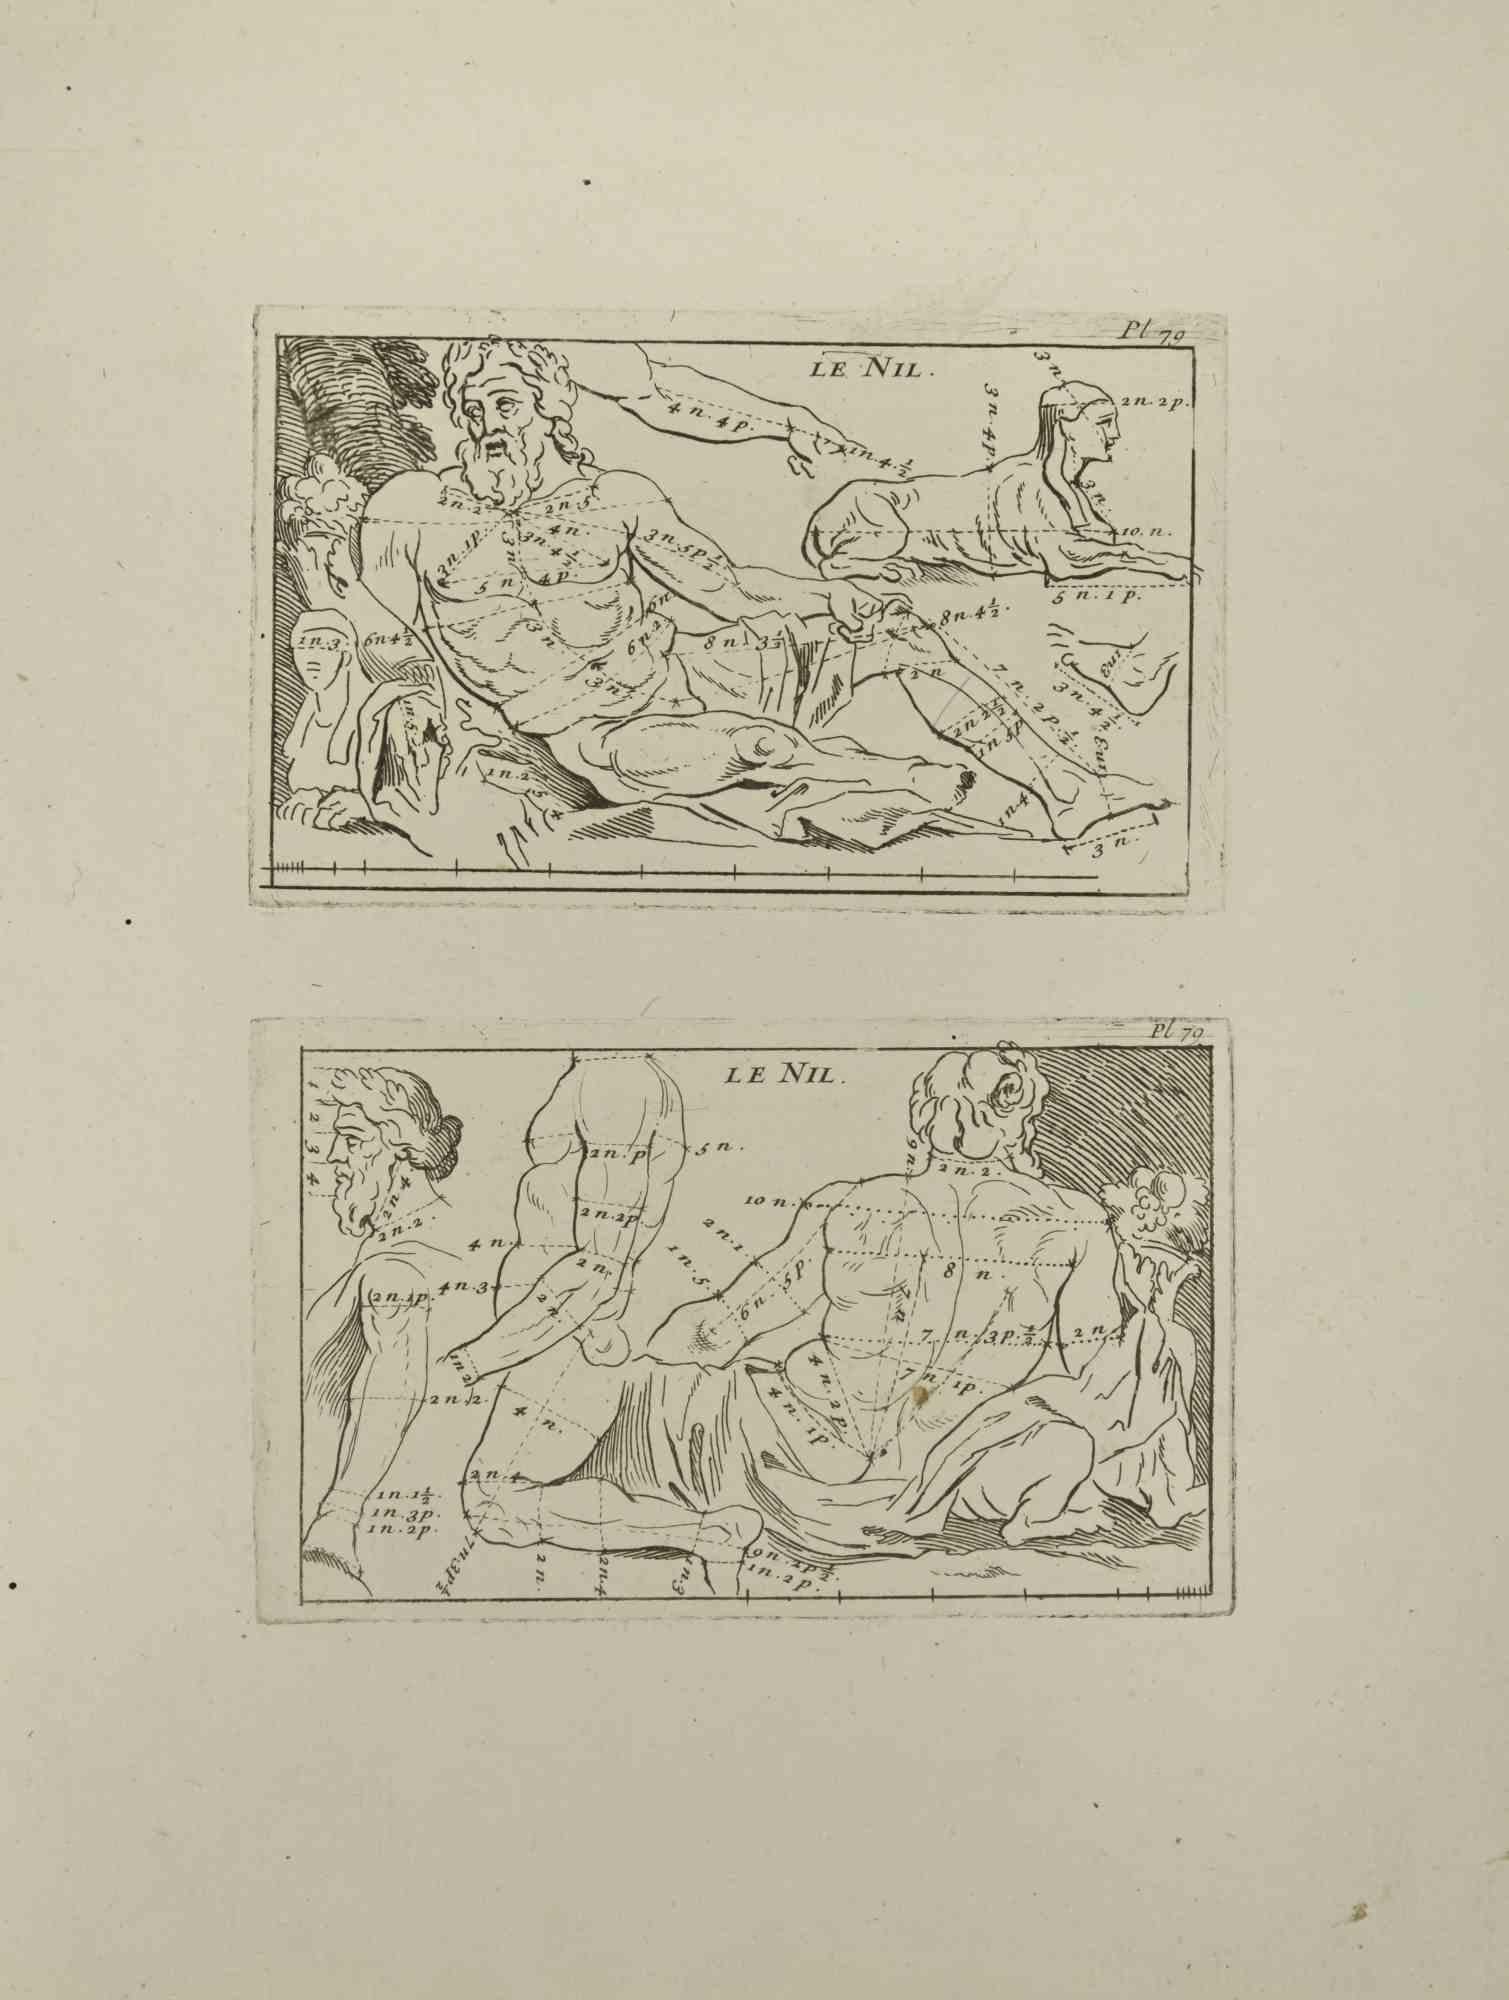 Le Nil ist eine Radierung von Jean Francois Poletnich aus dem 18. Jahrhundert.

Guter Zustand mit Stockflecken.

Das Kunstwerk wird mit sicheren Strichen dargestellt.

Die Radierung wurde für die Anatomie-Studie "JOMBERT, Charles-Antoine (1712-1784)